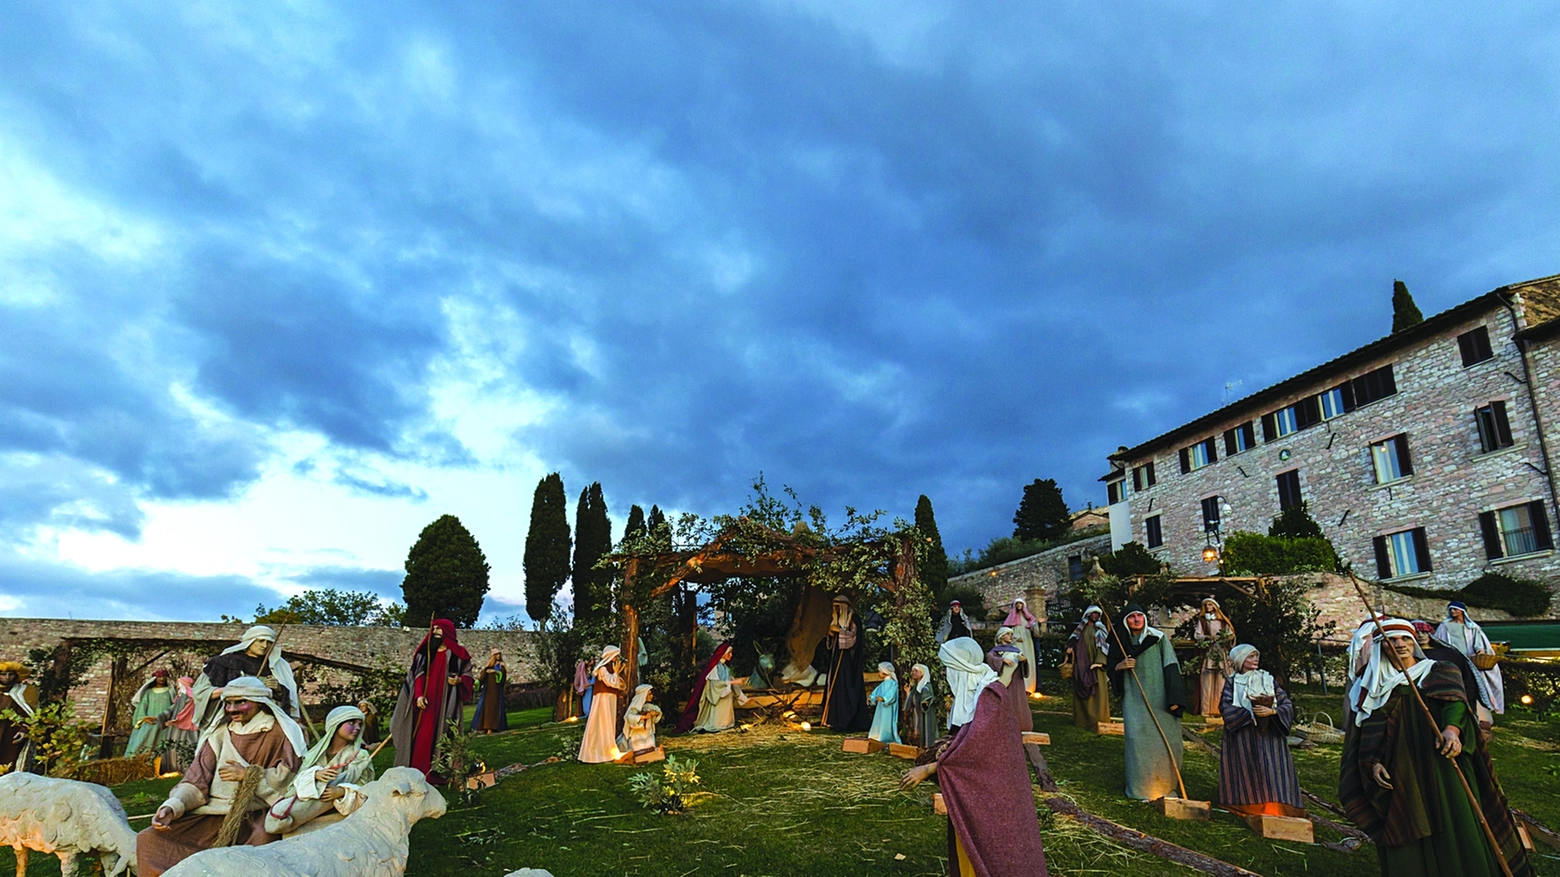 Iniziative / Da Assisi a Todi, la regione si illumina con musica, spiritualità e tantissime sorprese per i visitatori grandi e ma anche per i più piccoli